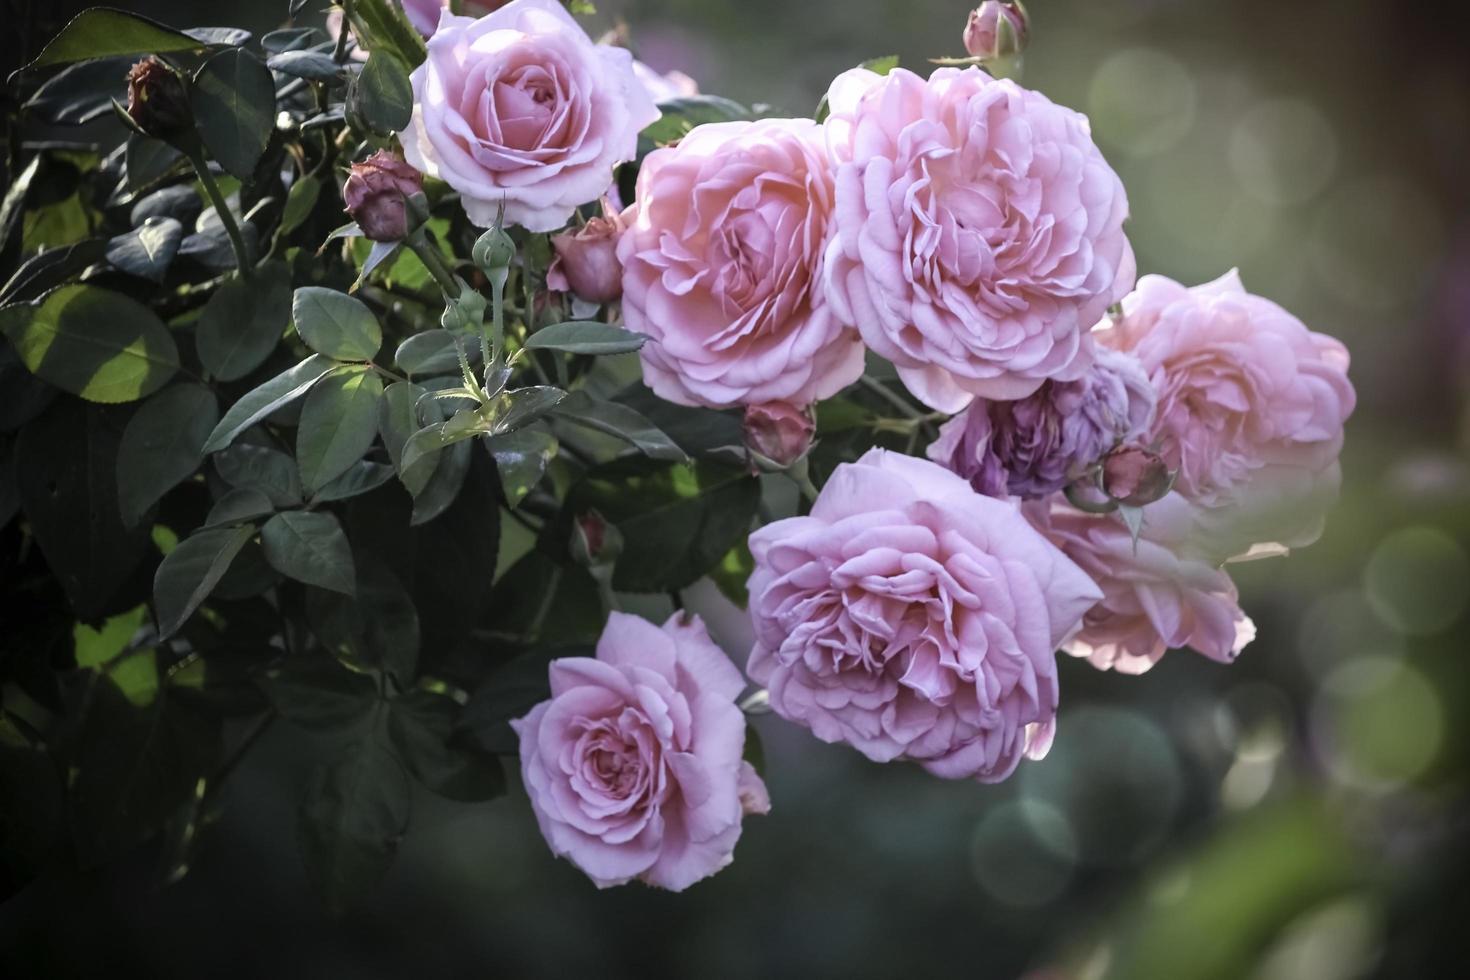 rosas inglesas rosadas que florecen en el jardín de verano, una de las flores más fragantes, la flor con mejor olor, hermosa y romántica foto